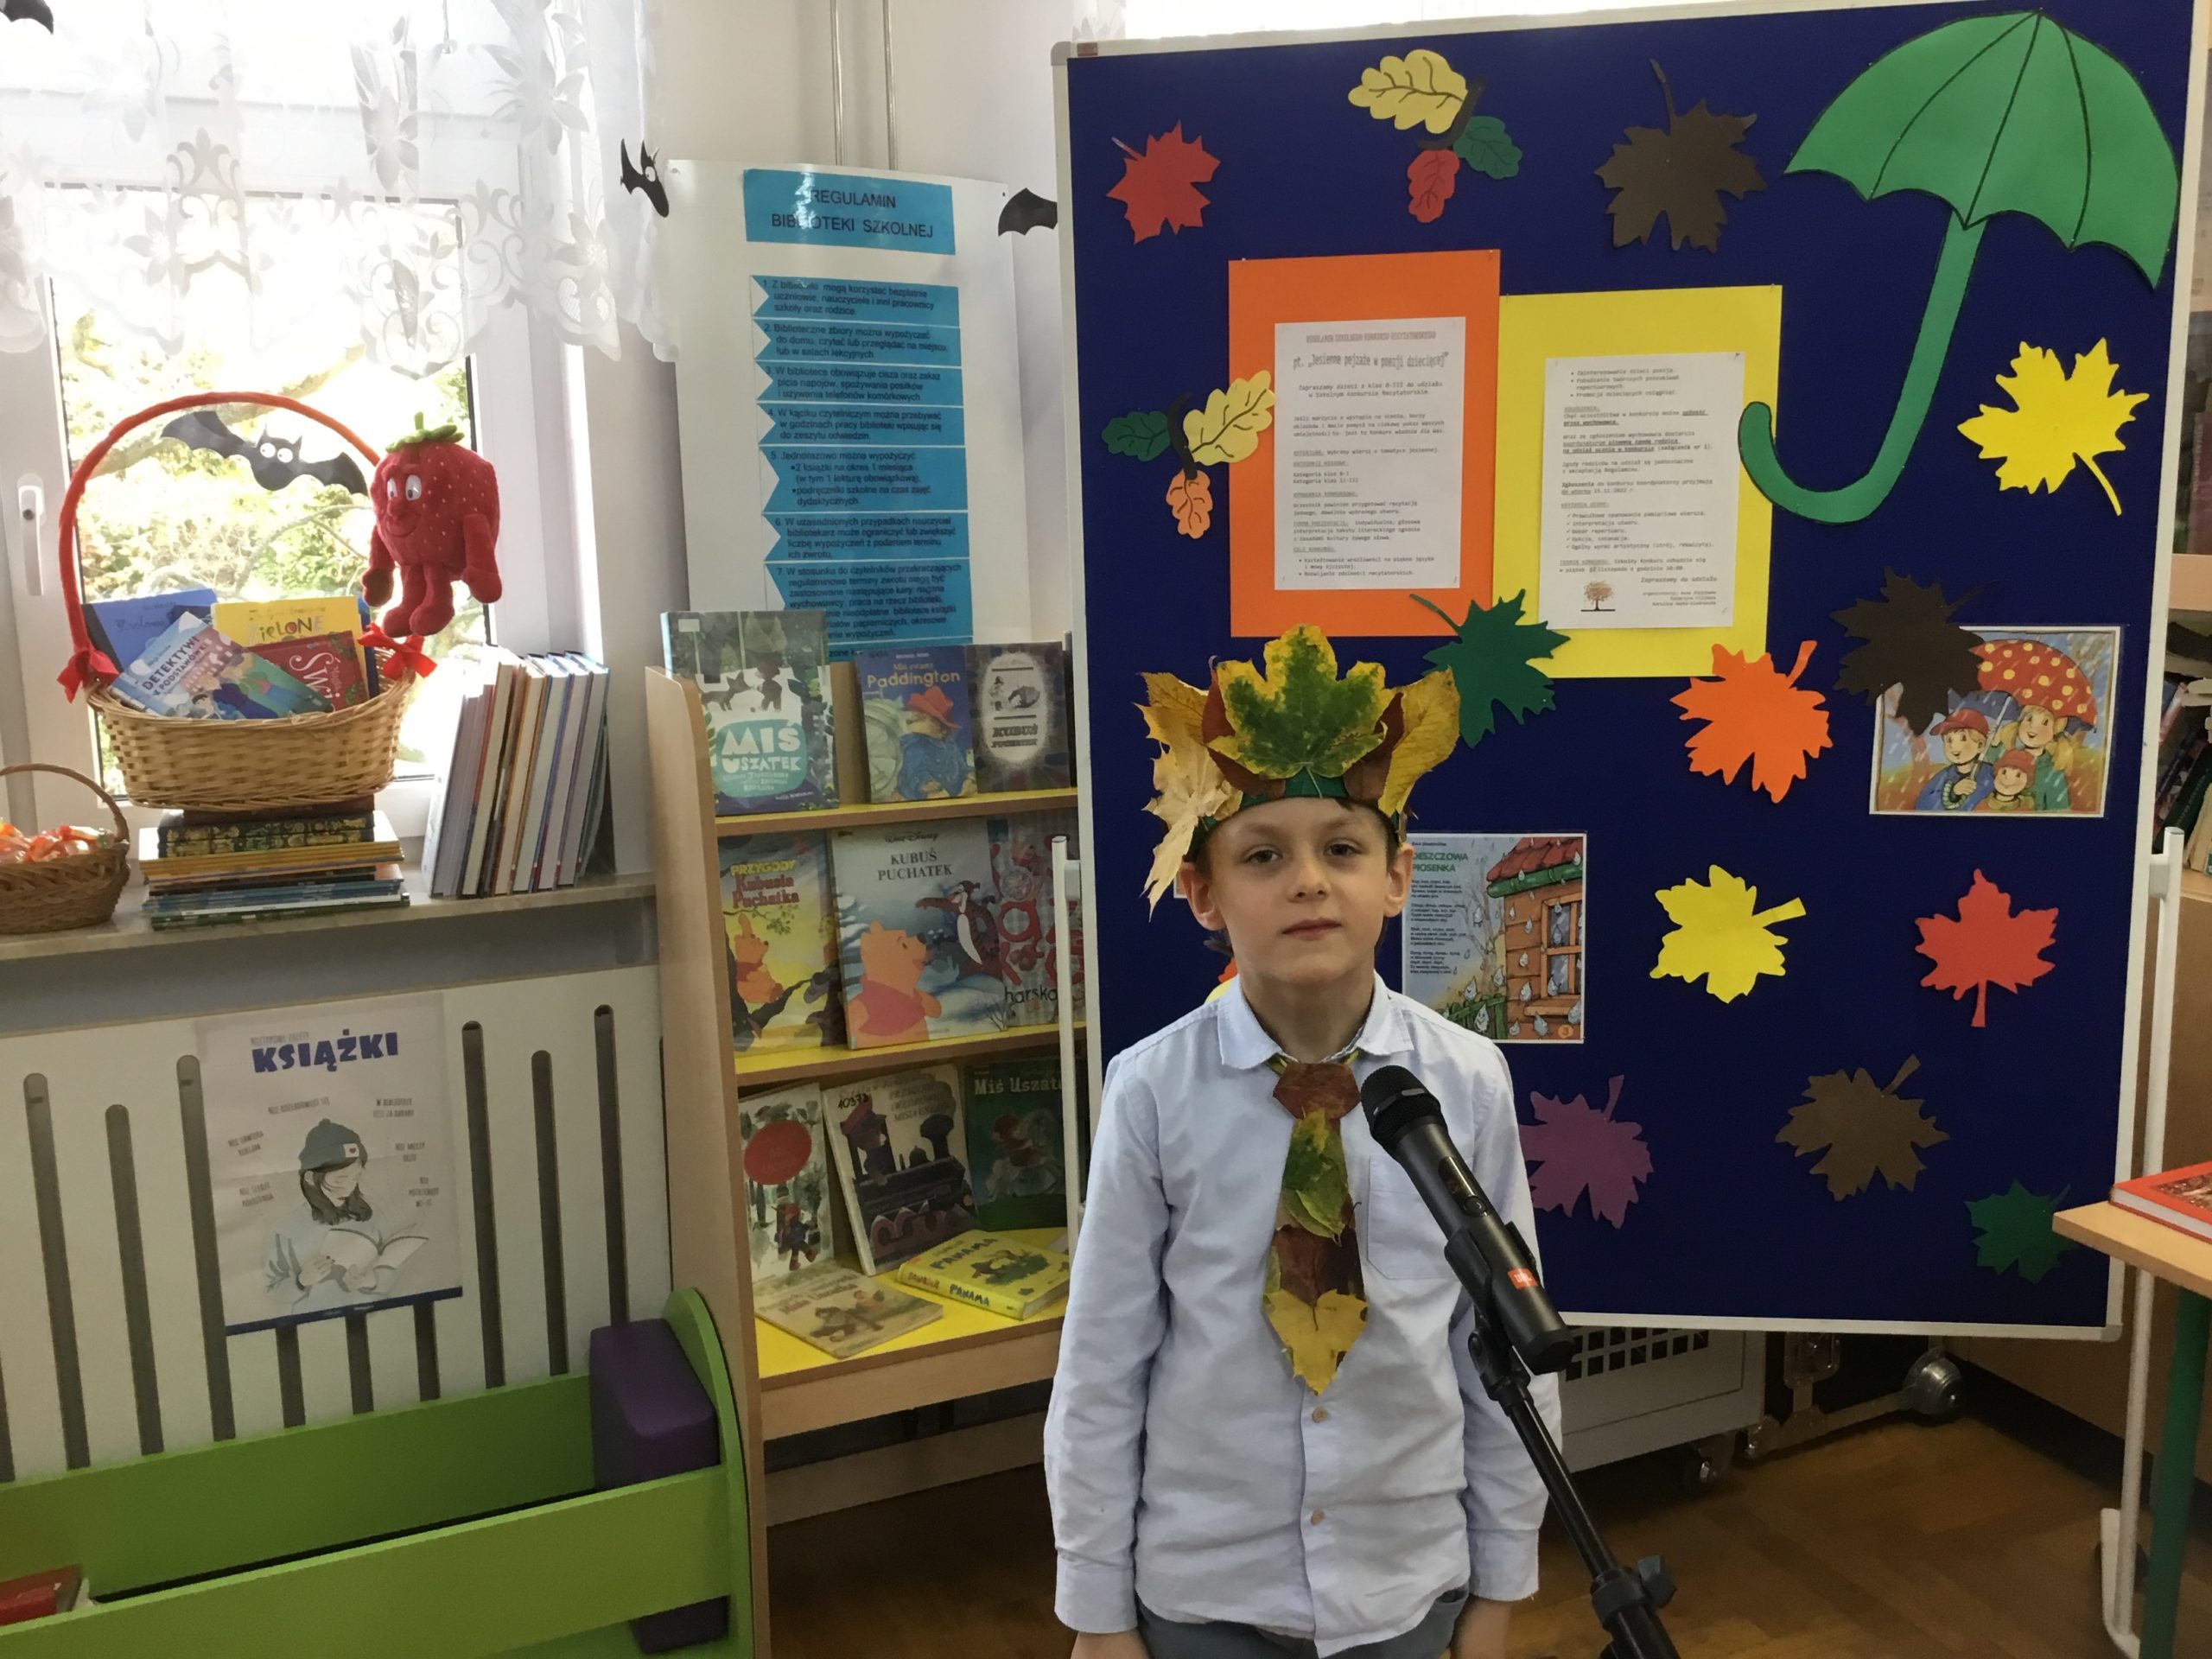 chłopiec, który orzymał 2 miejsce podczas występu w bibliotece szkolnej, w tle tablica informująca o konkursie, na parapecie kosz z nagrodami